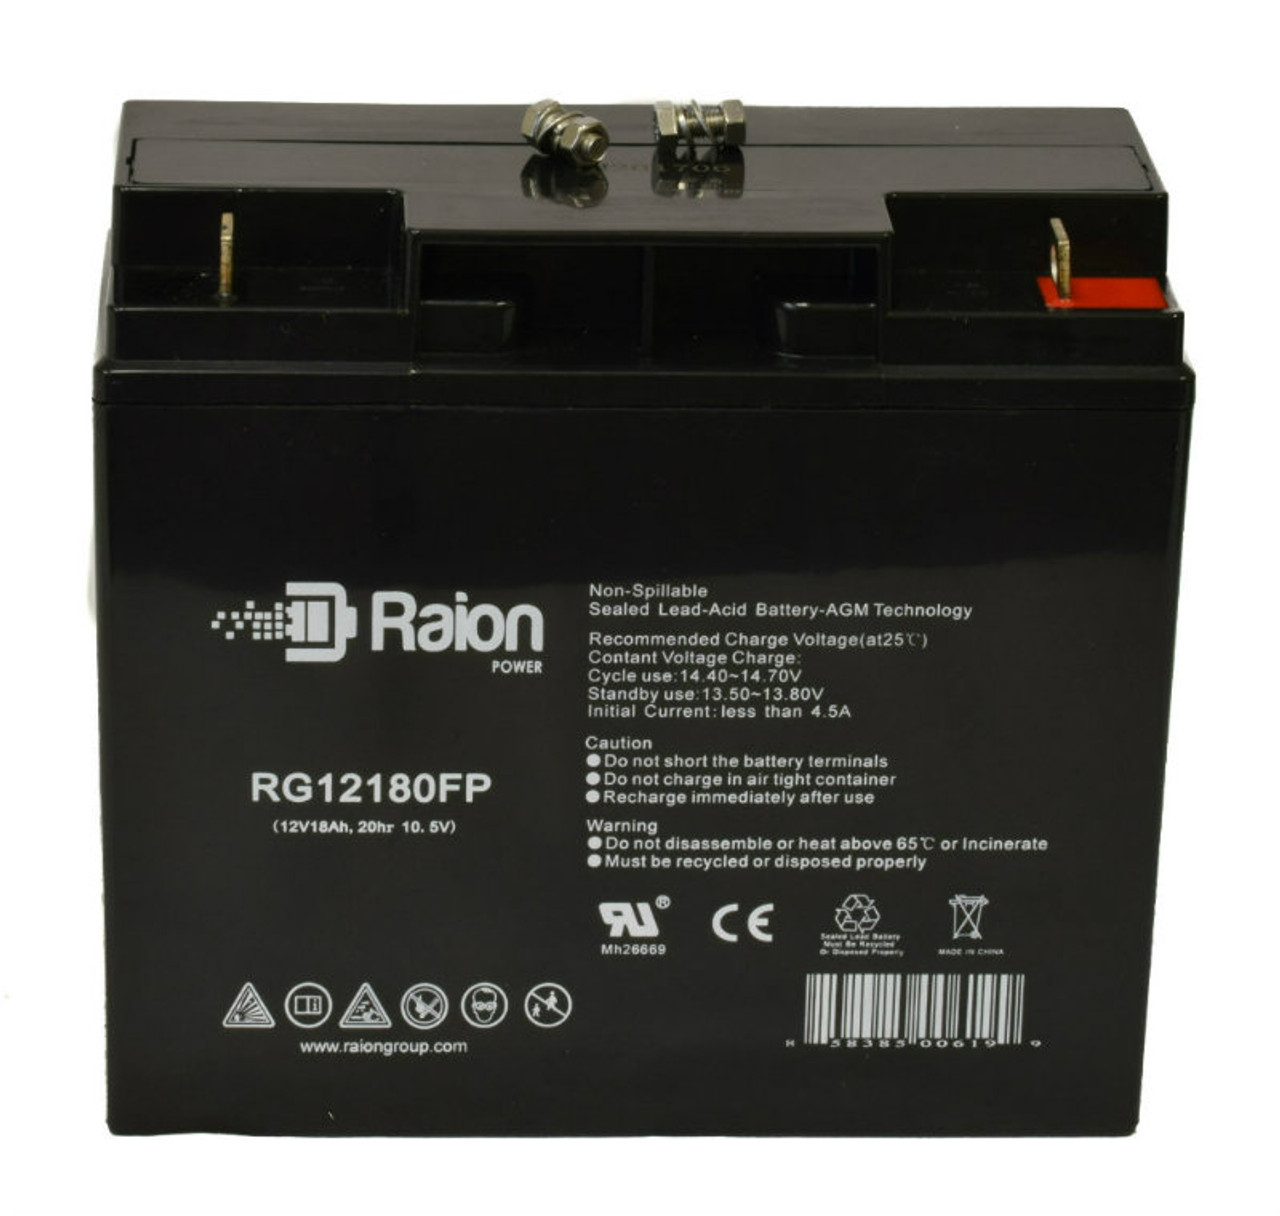 Raion Power RG12180FP 12V 18Ah Lead Acid Battery for ExpertPower EXP12200